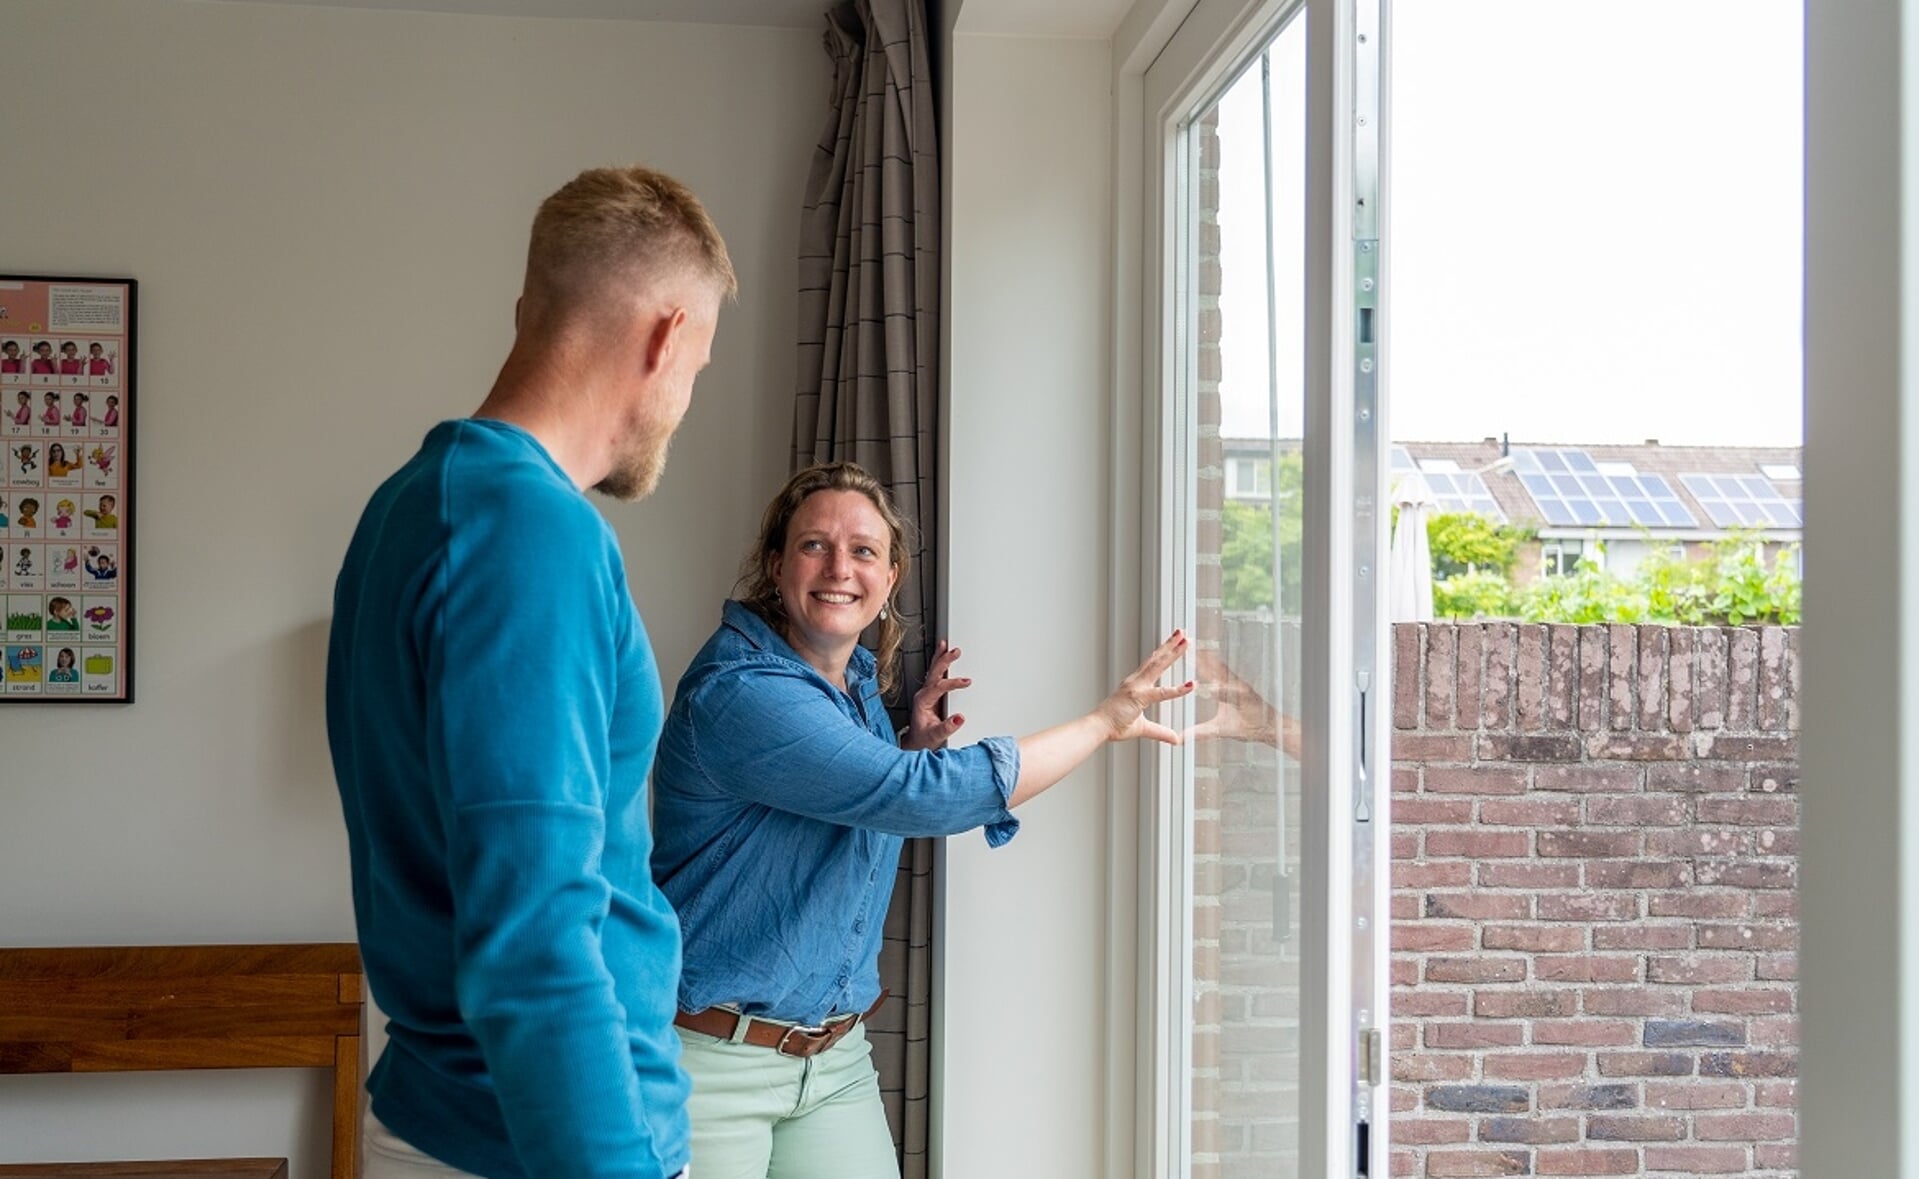 Tijdens de thematours geven bewoners van duurzame huizen uitleg over hoe zij hun woning energiezuiniger hebben gekregen. In Boxtel doet Karla Niggebrugge mee (niet op de foto).